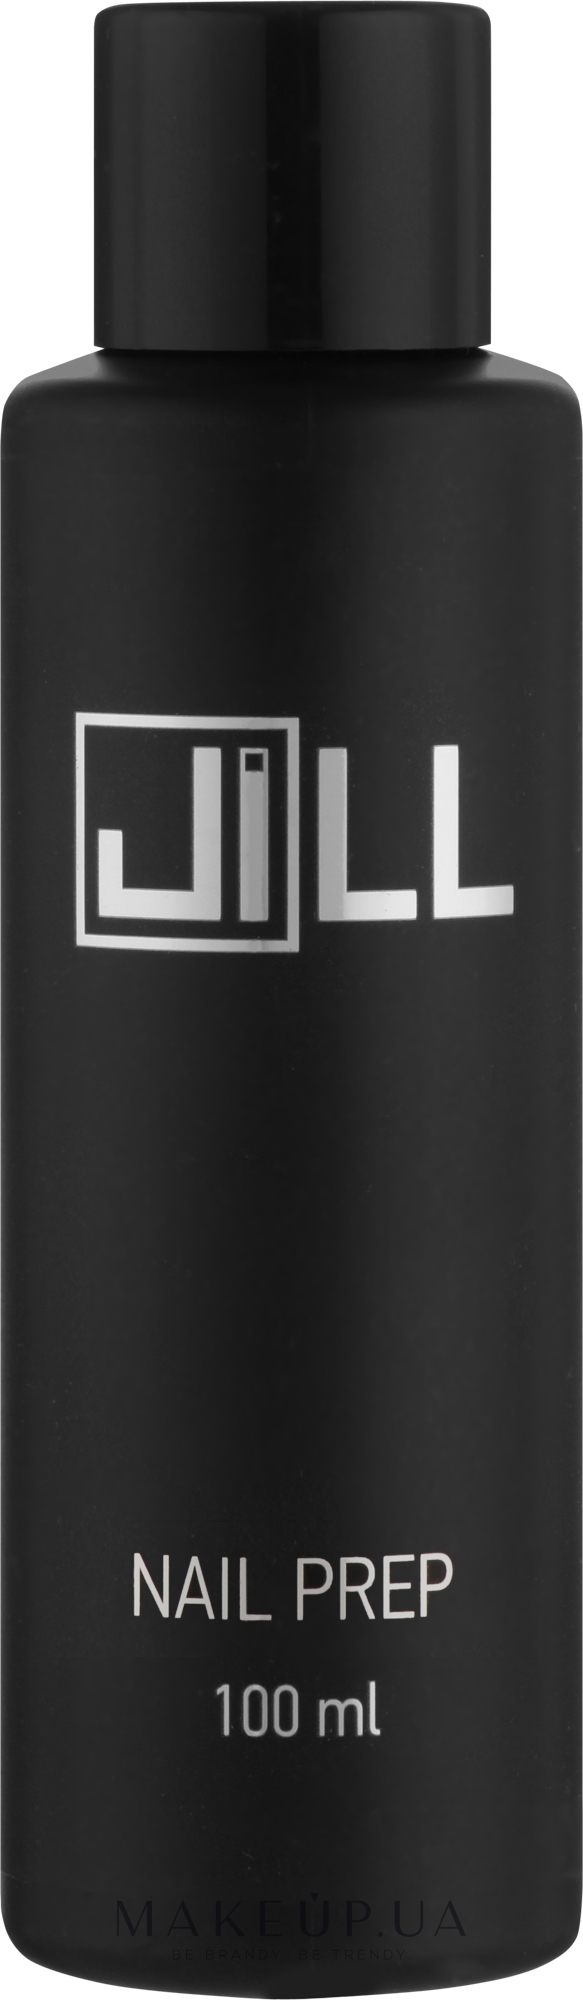 Рідина для підготування нігтя - Jill Nail Prep — фото 100ml